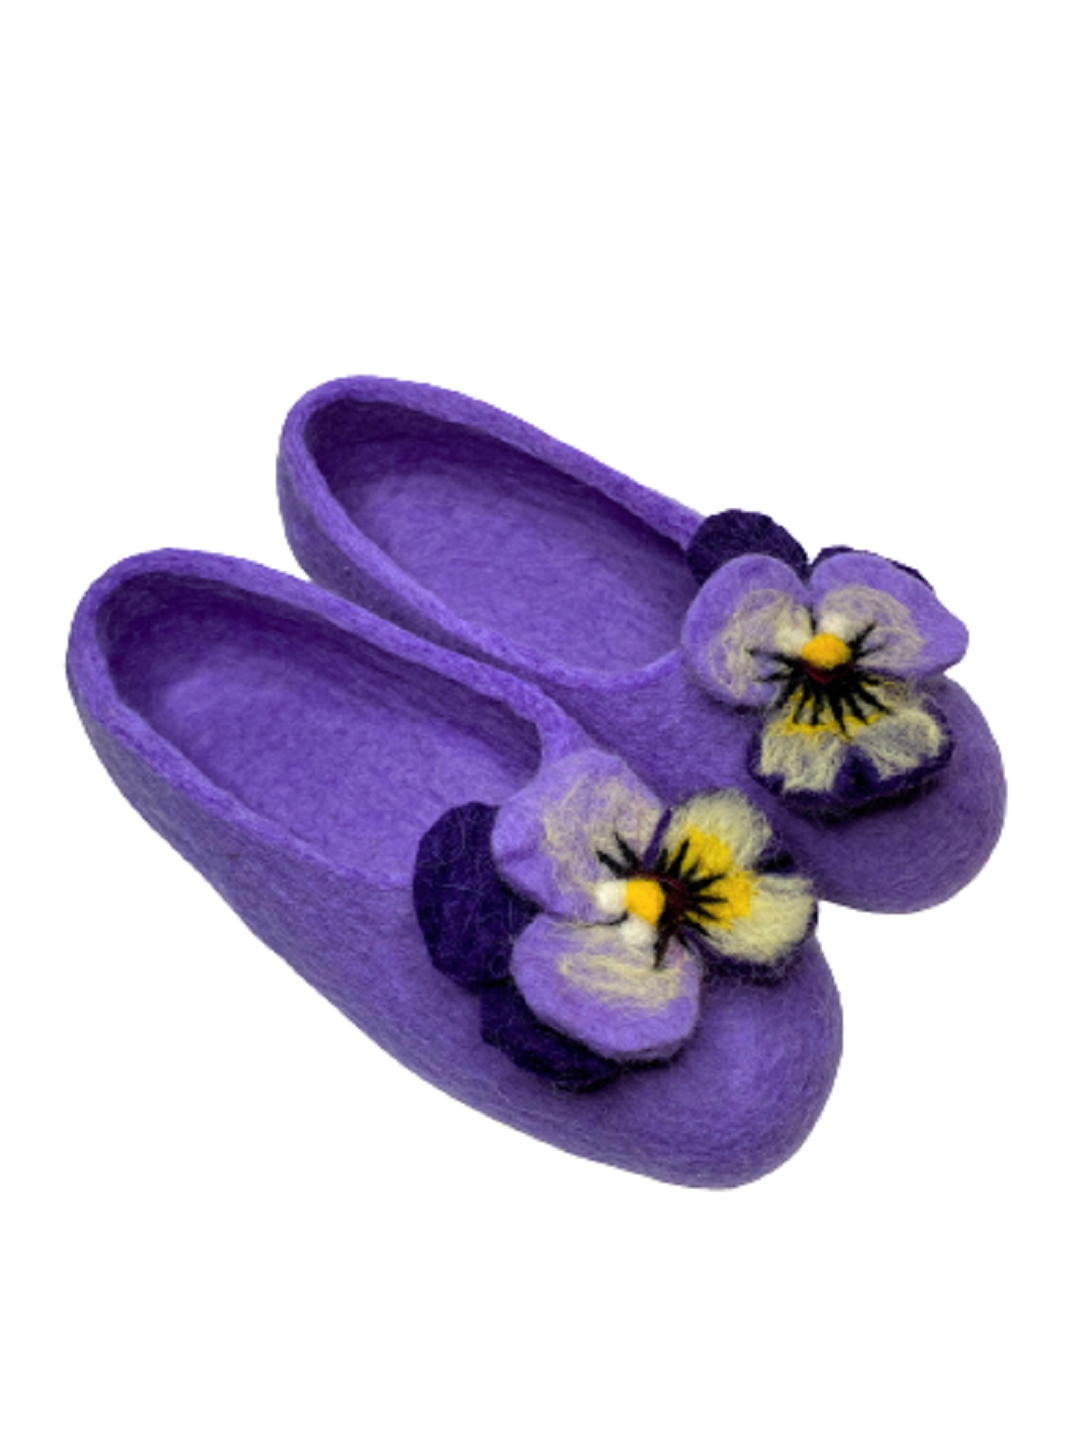 войлочные тапочки фиолетовые с накладными цветами